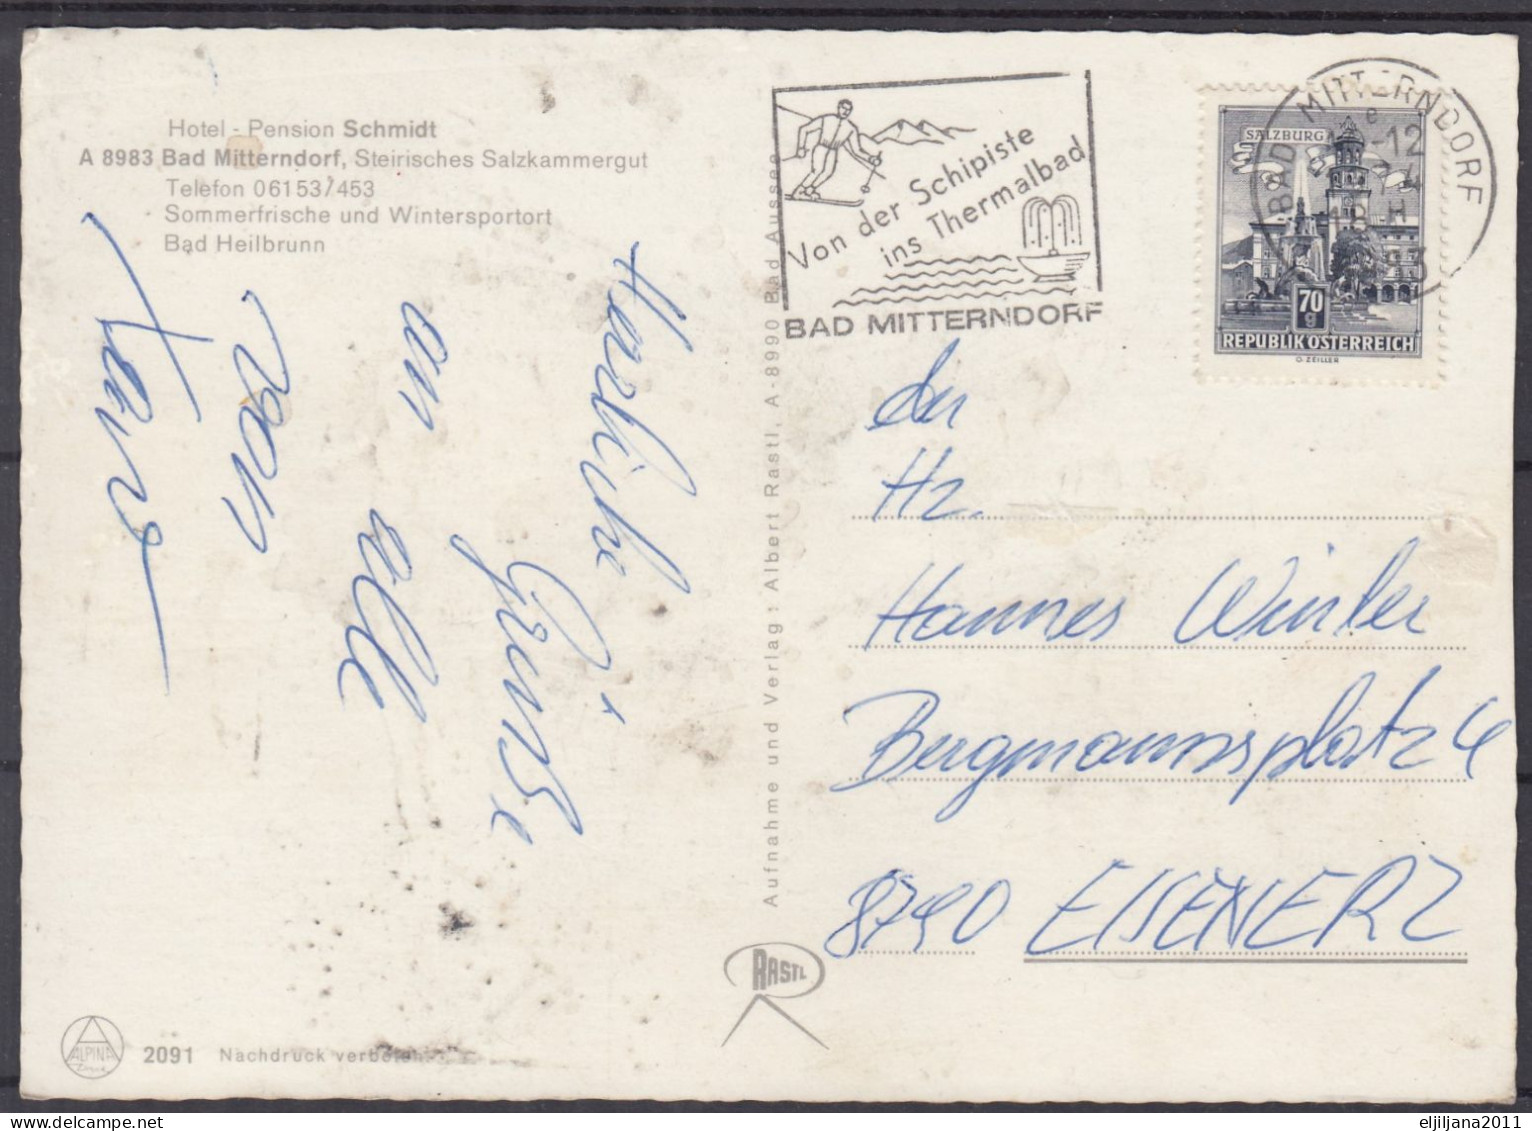 Austria / Österreich 1974 ⁕ BAD MITTERNDORF - Hotel Pansion SCHMIDT ⁕ Postcard With Stamp - Bad Mitterndorf